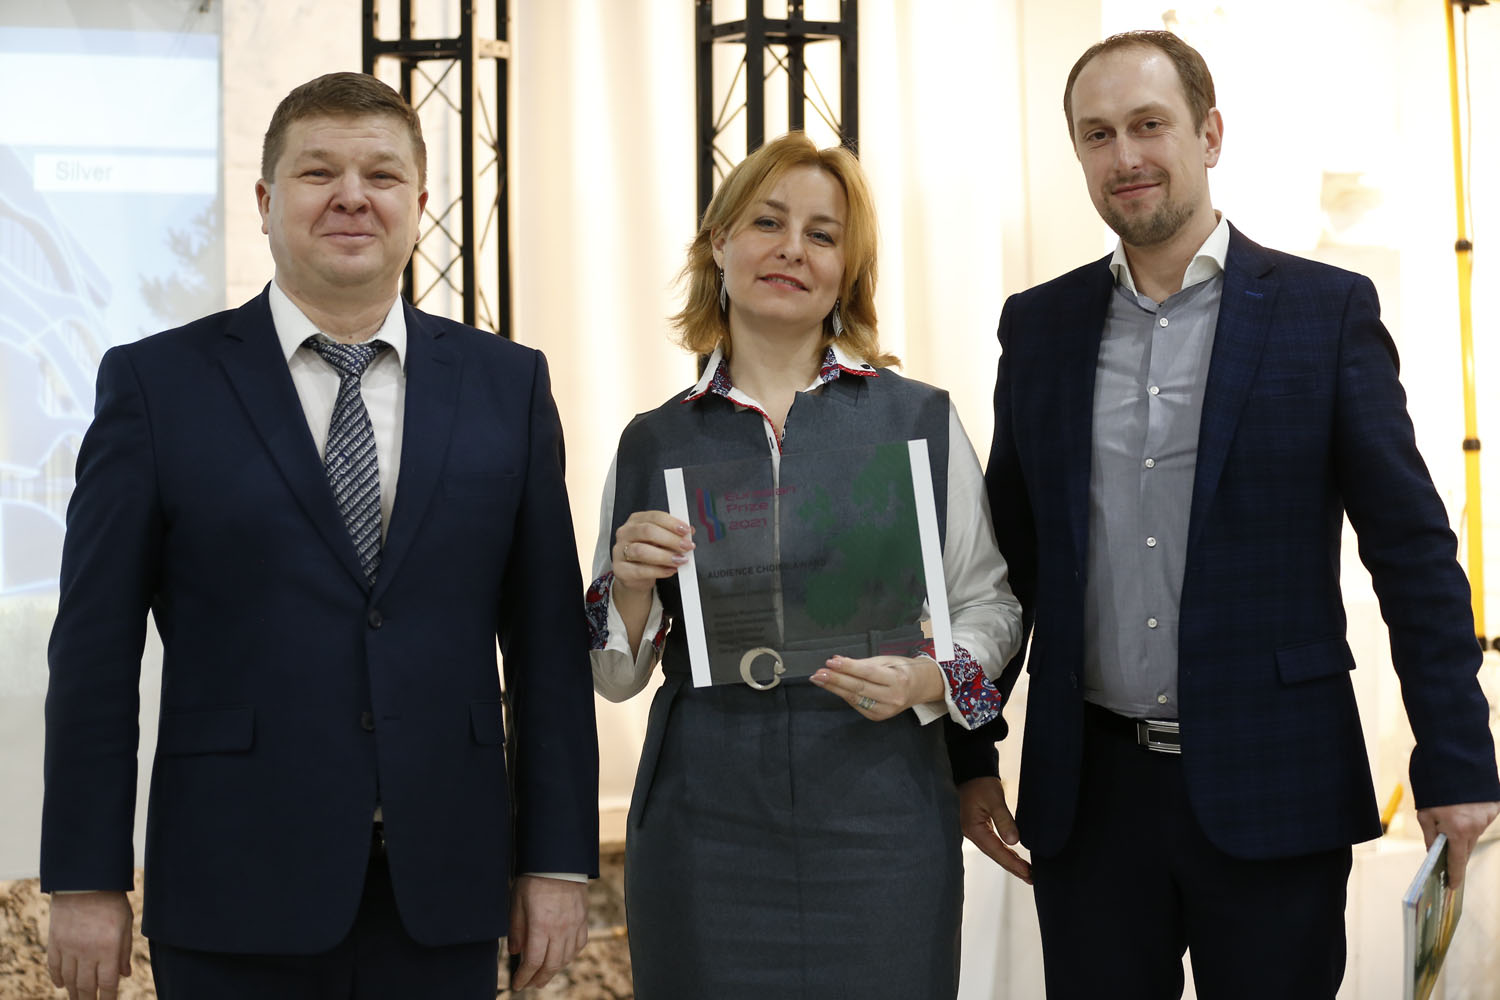 Победители Международного конкурса архитектуры и дизайна «Евразийская Премия 2021»